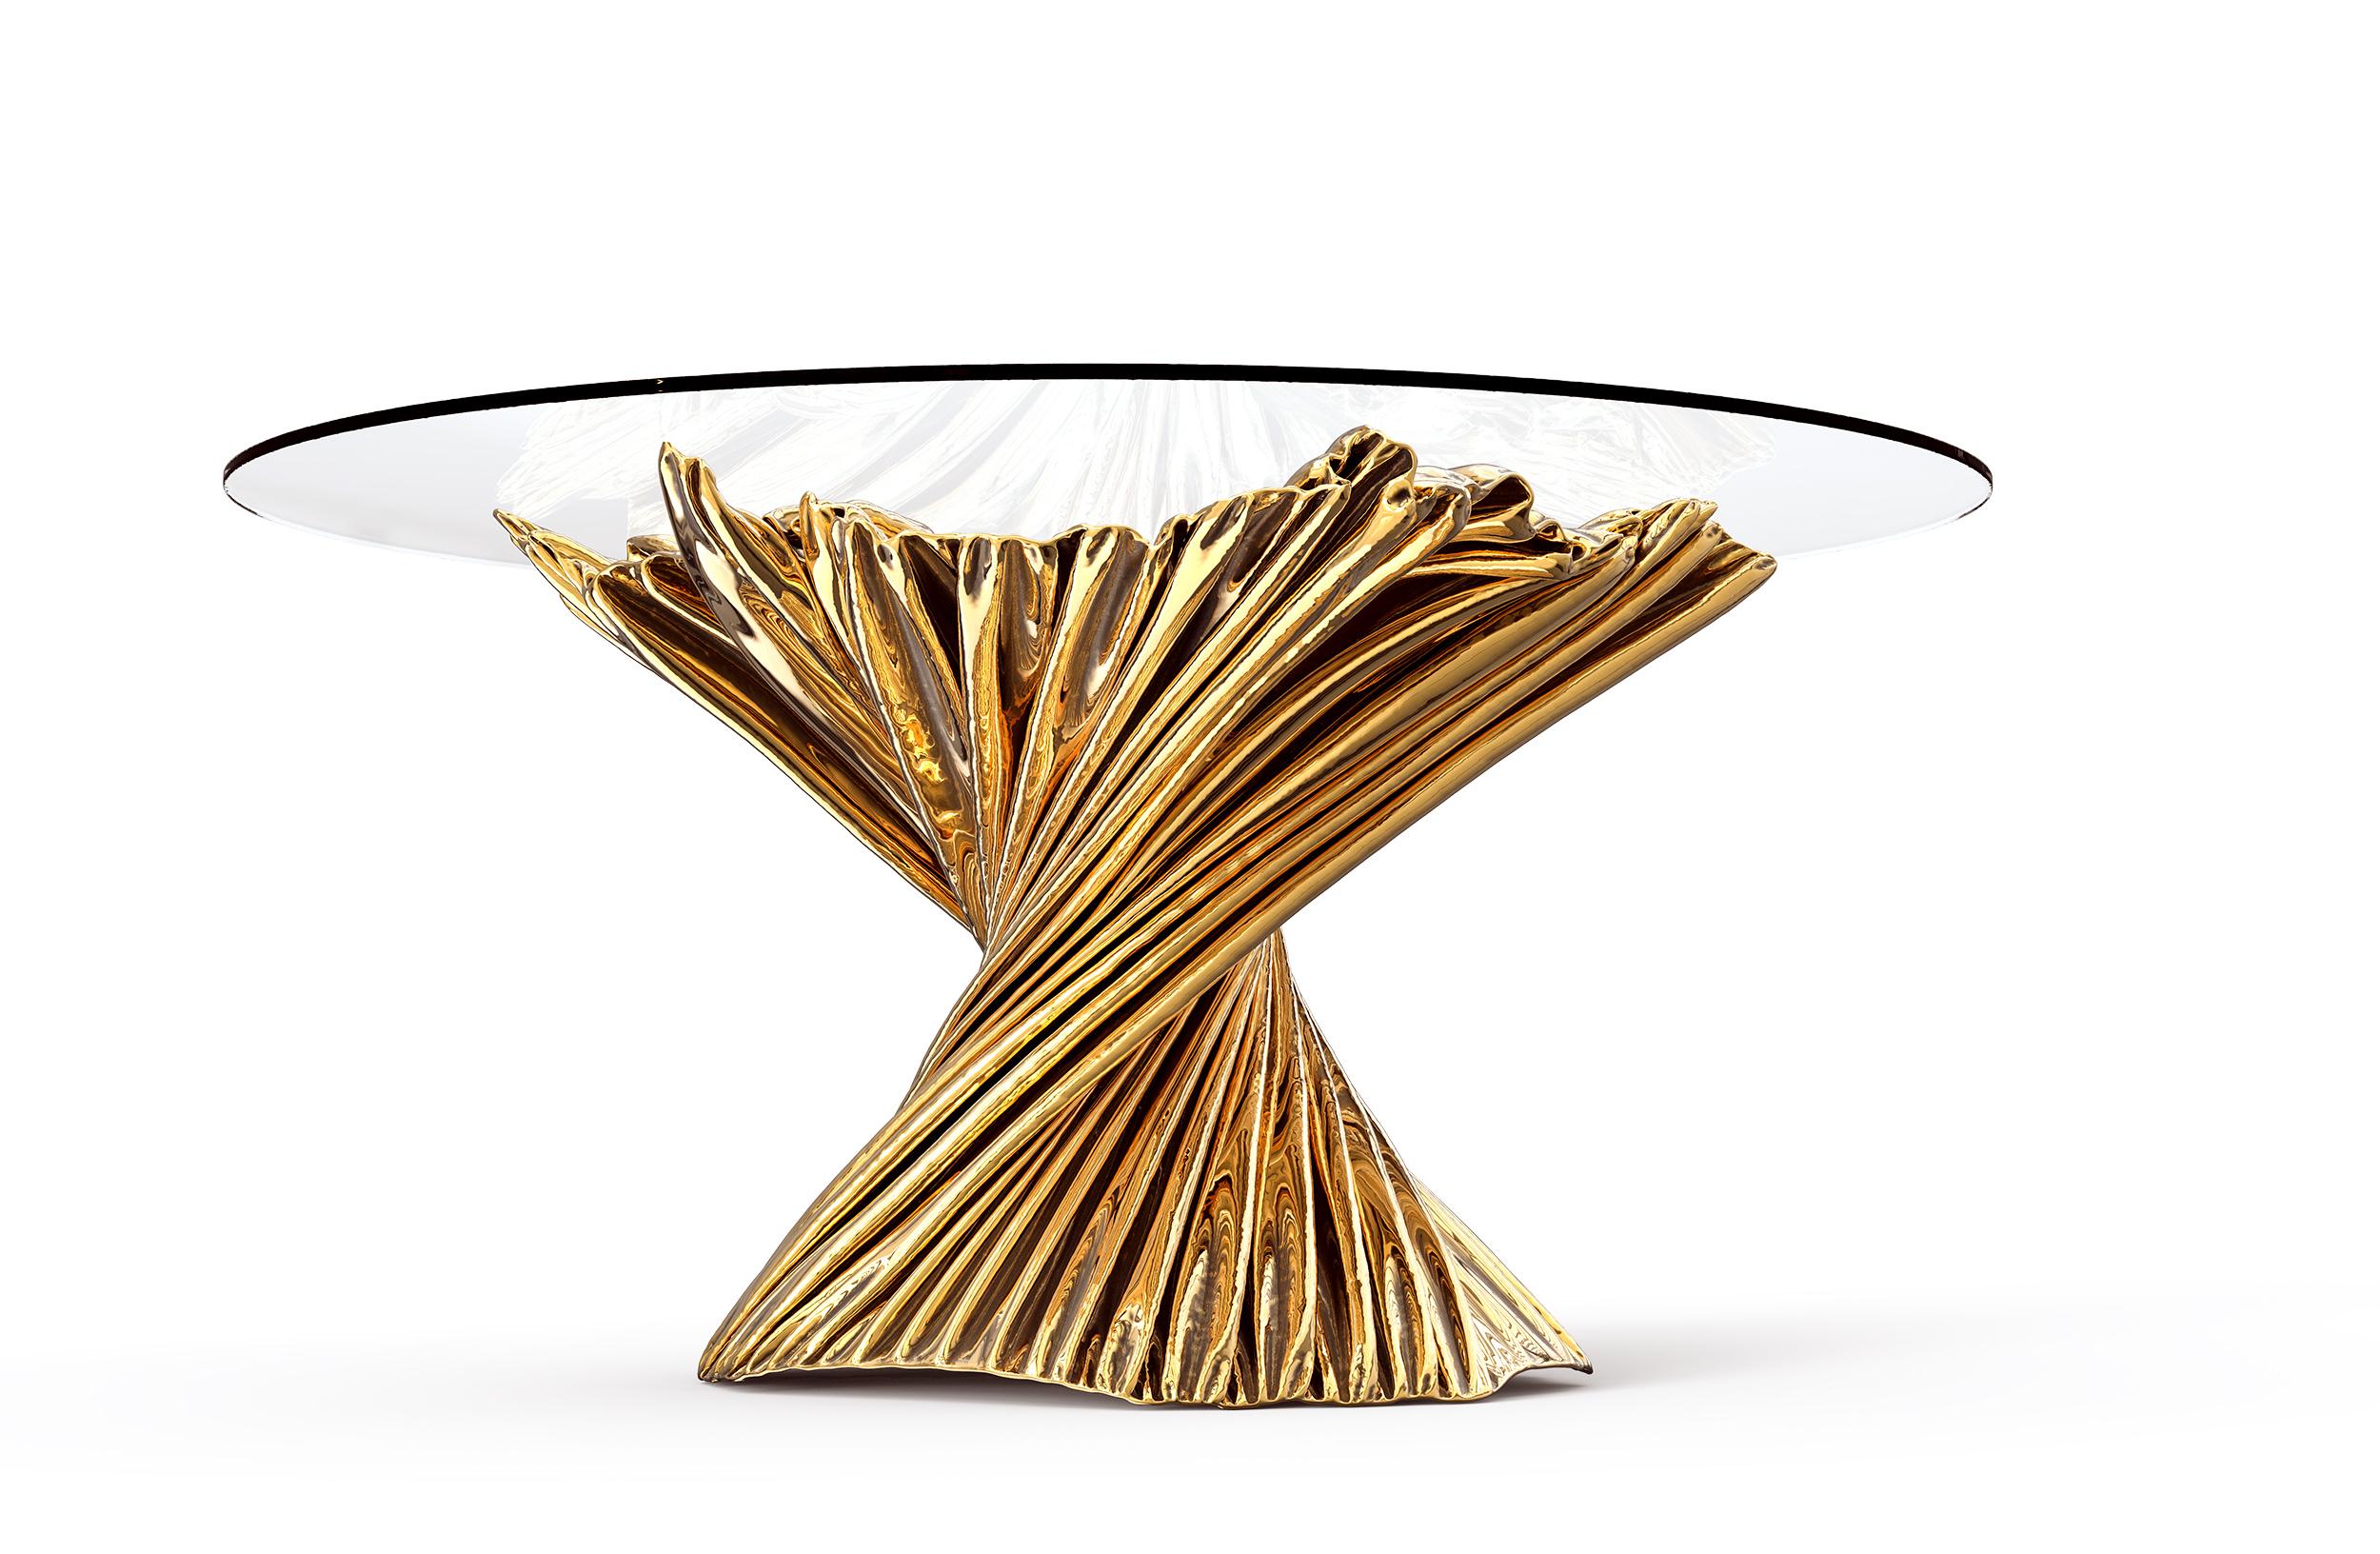 La table de salle à manger Levitaz se dresse comme une pièce maîtresse sculpturale, témoignant de la fusion d'un matériau intemporel et d'une esthétique moderne. Coulée dans le bronze, sa forme est une série de contours en cascade, polis jusqu'à une